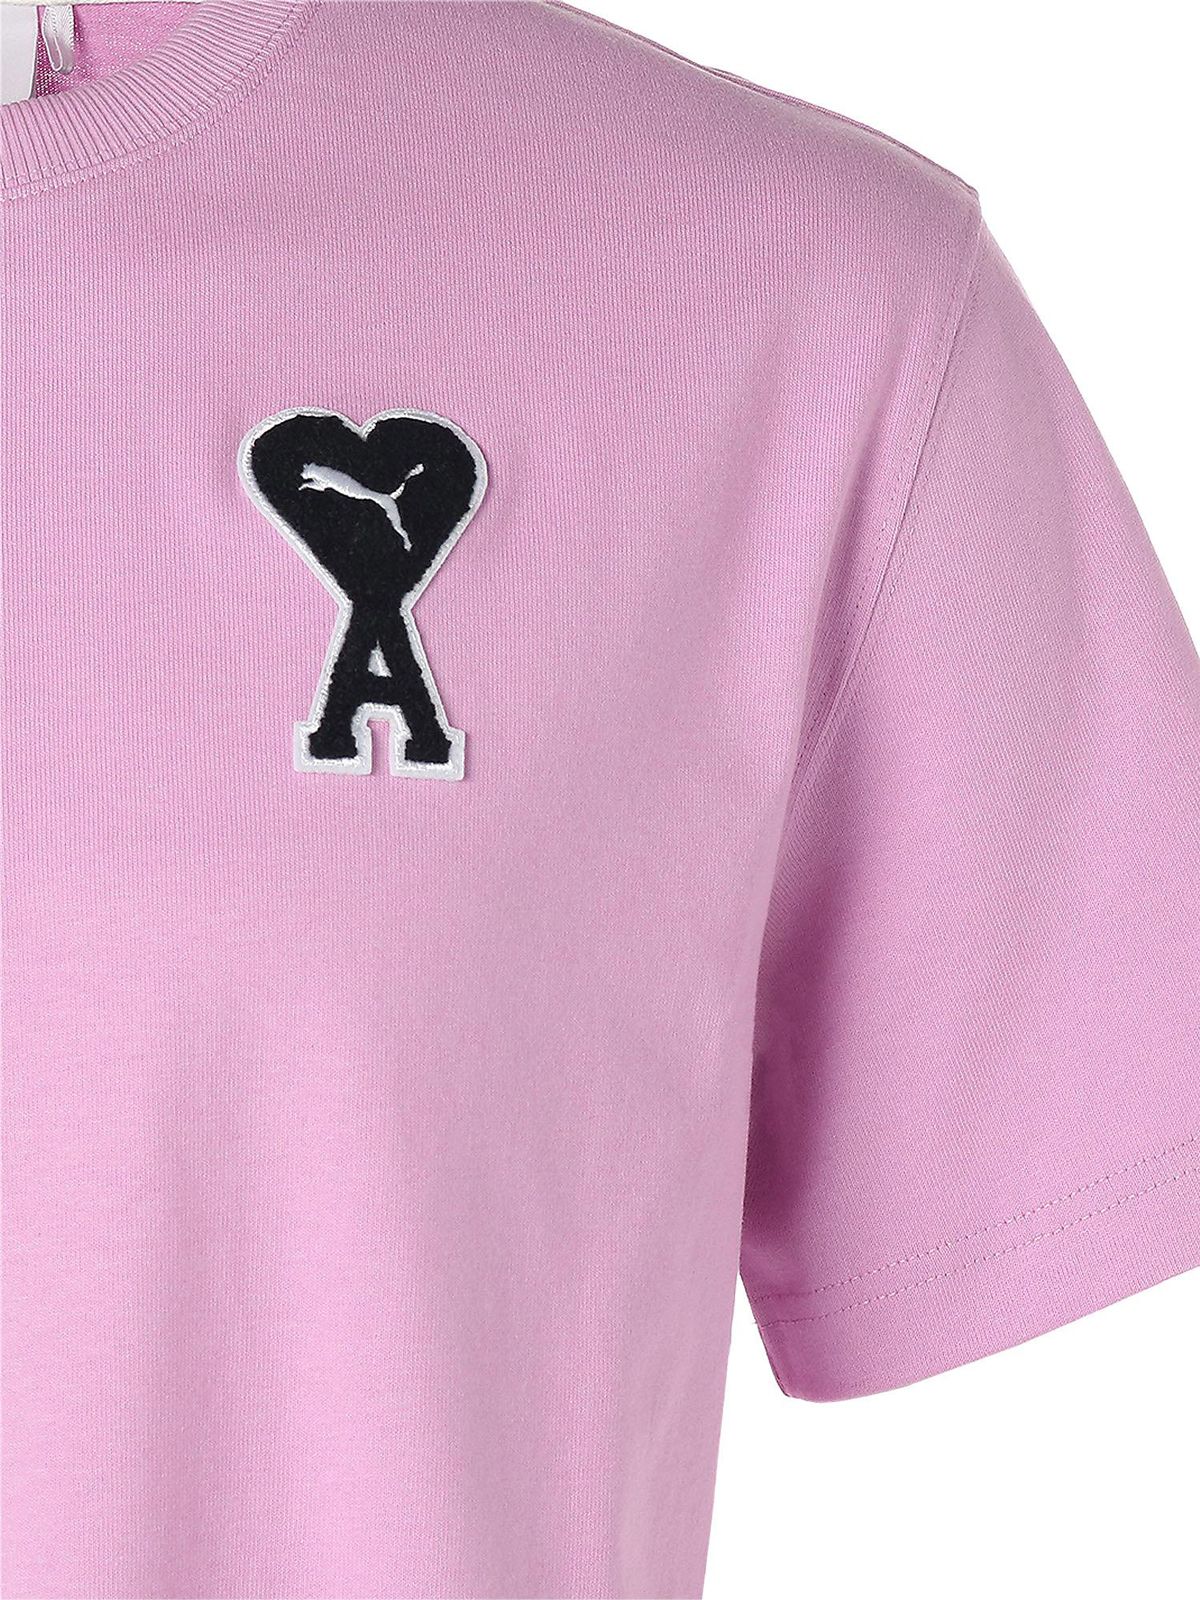 限定♡ puma × amiparis コラボ Tシャツ ピンク